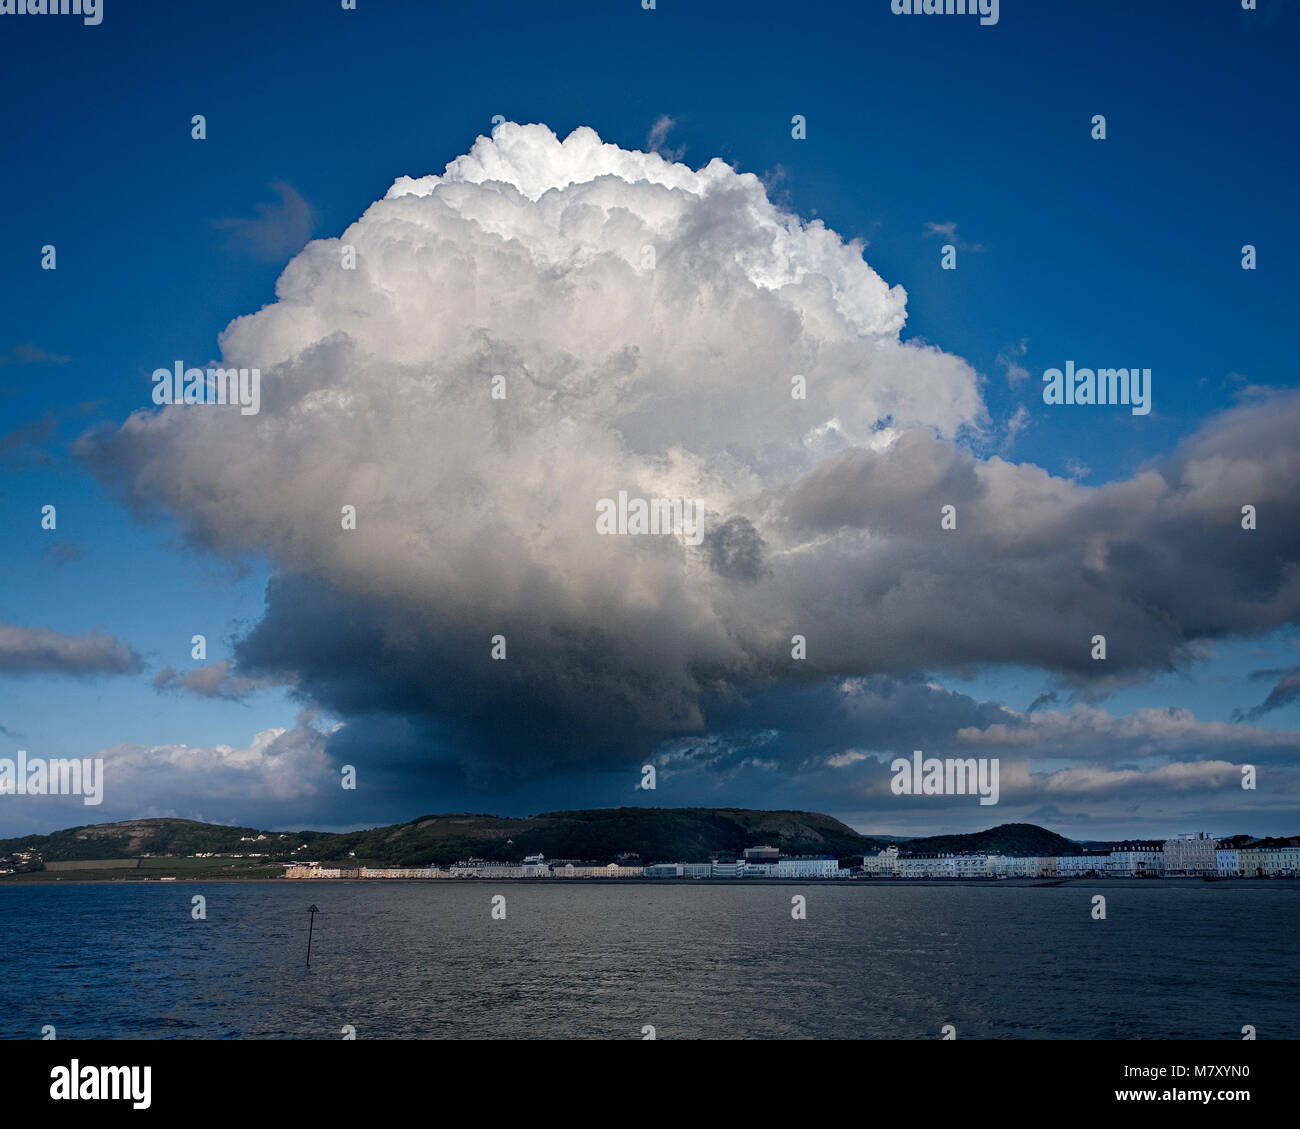 Storm cloud over Llandudno promenade, North Wales coast Stock Photo